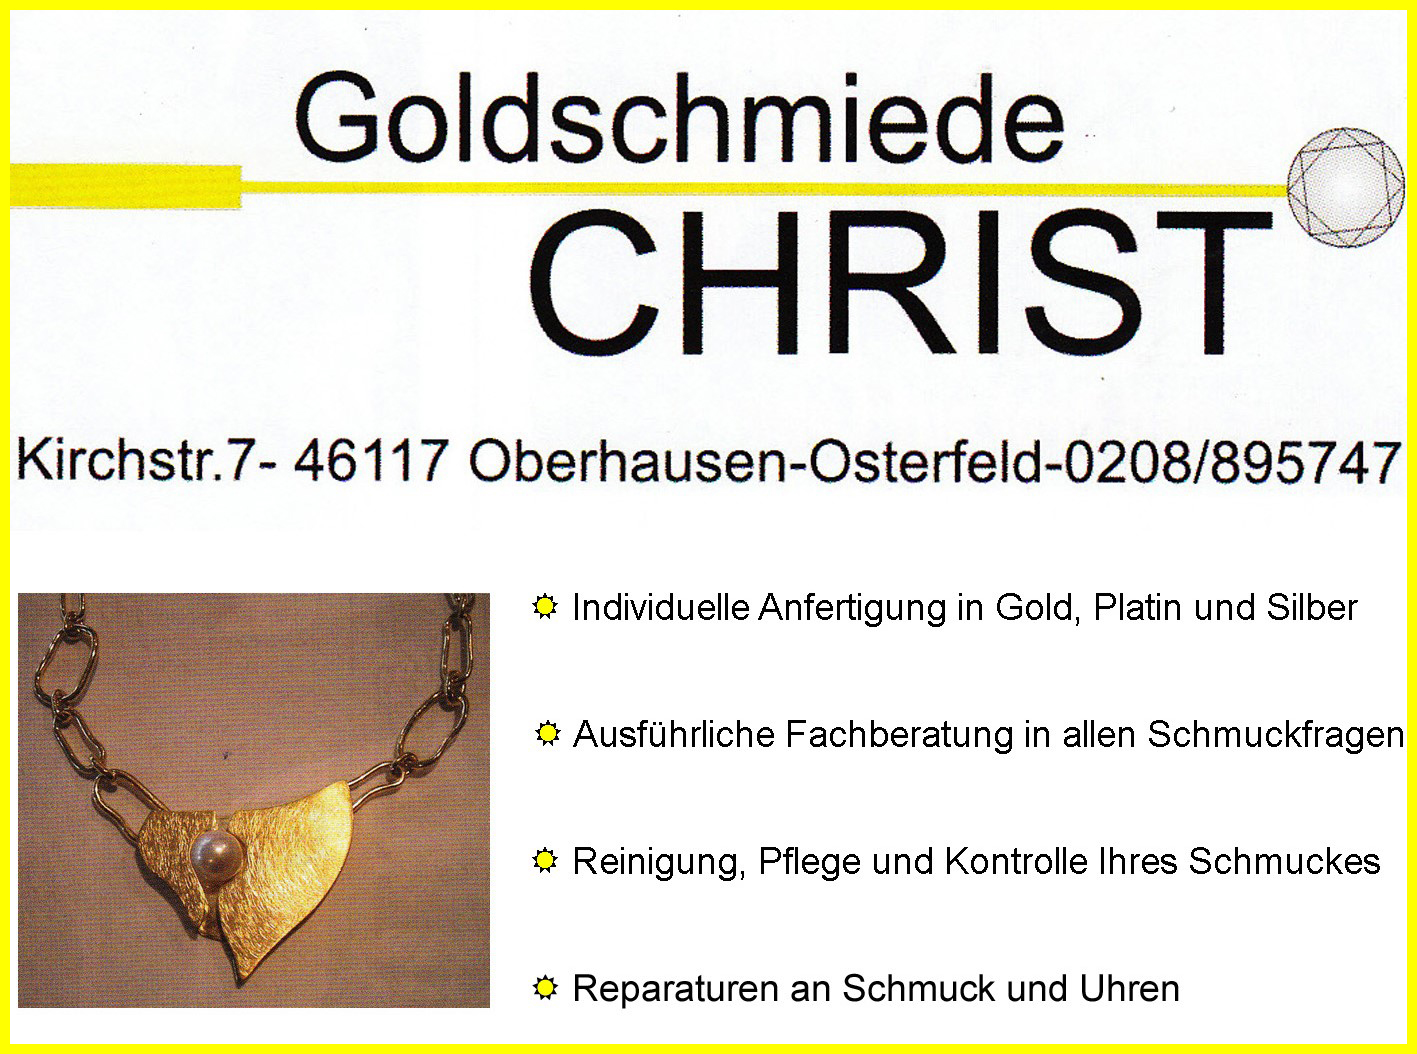 Goldschmiede_Christ_mit_Rahmen.jpg